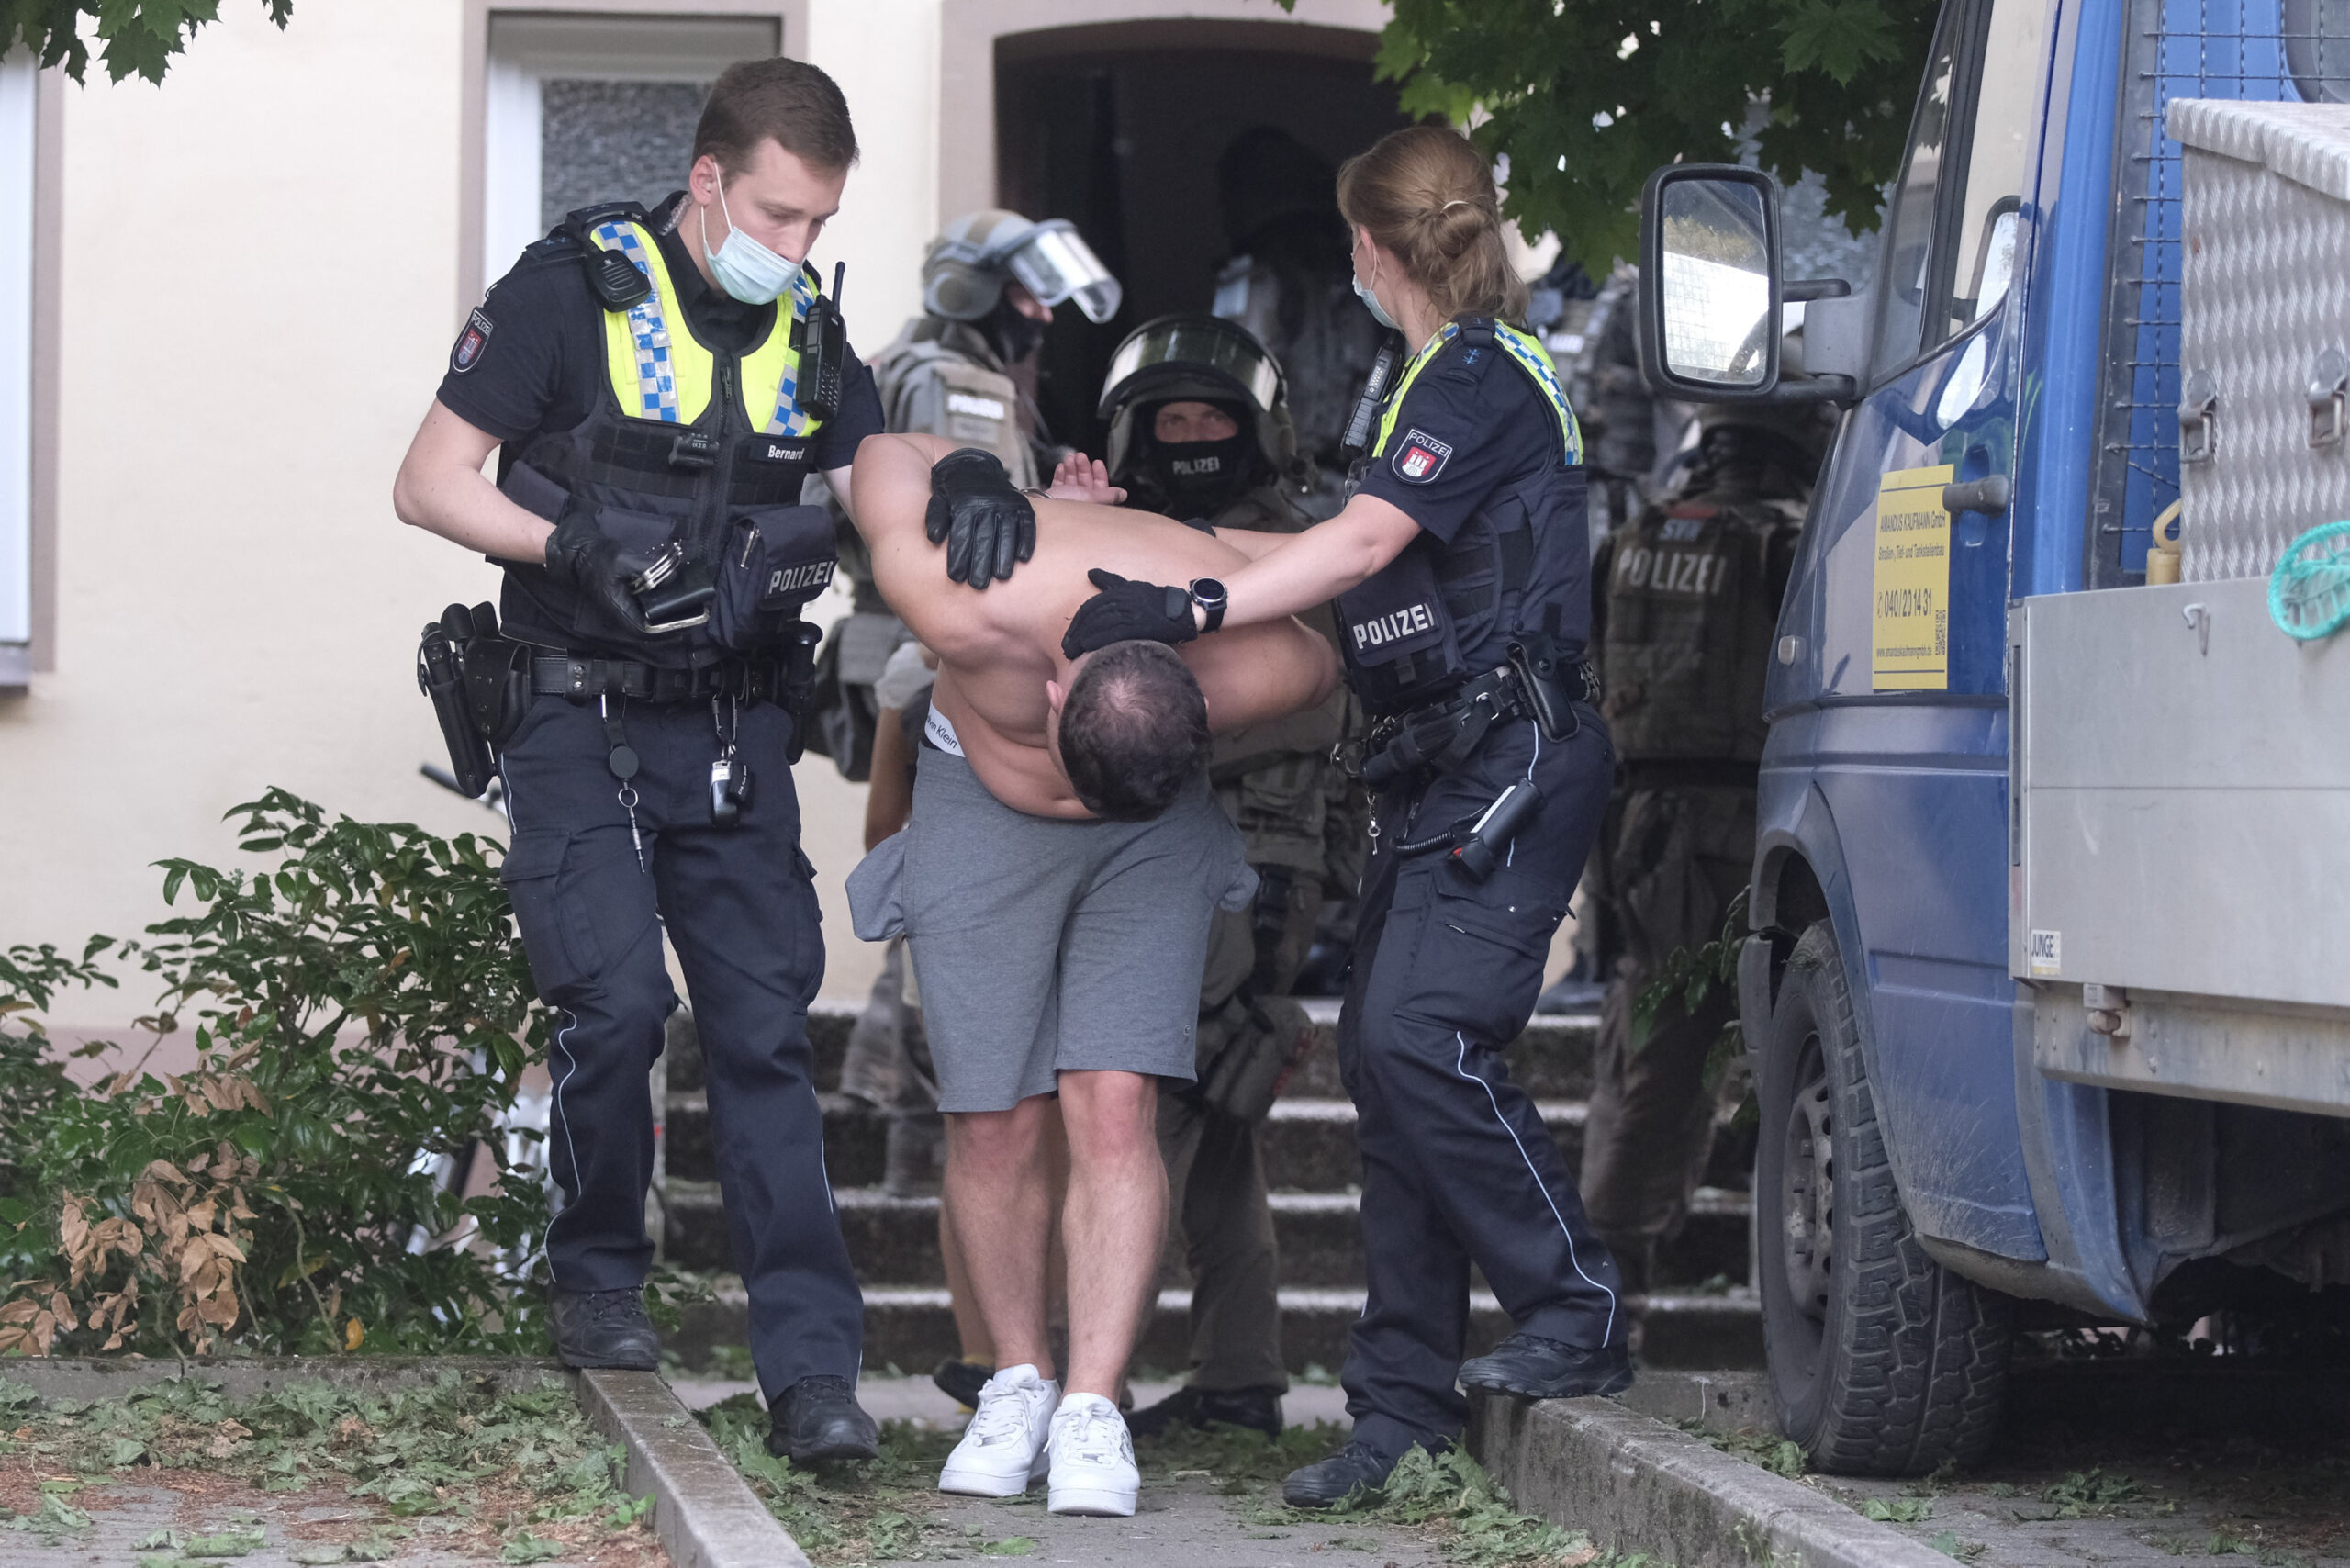 Polizeikräfte nehmen in Hamburg einen mutmaßlichen Dealer fest